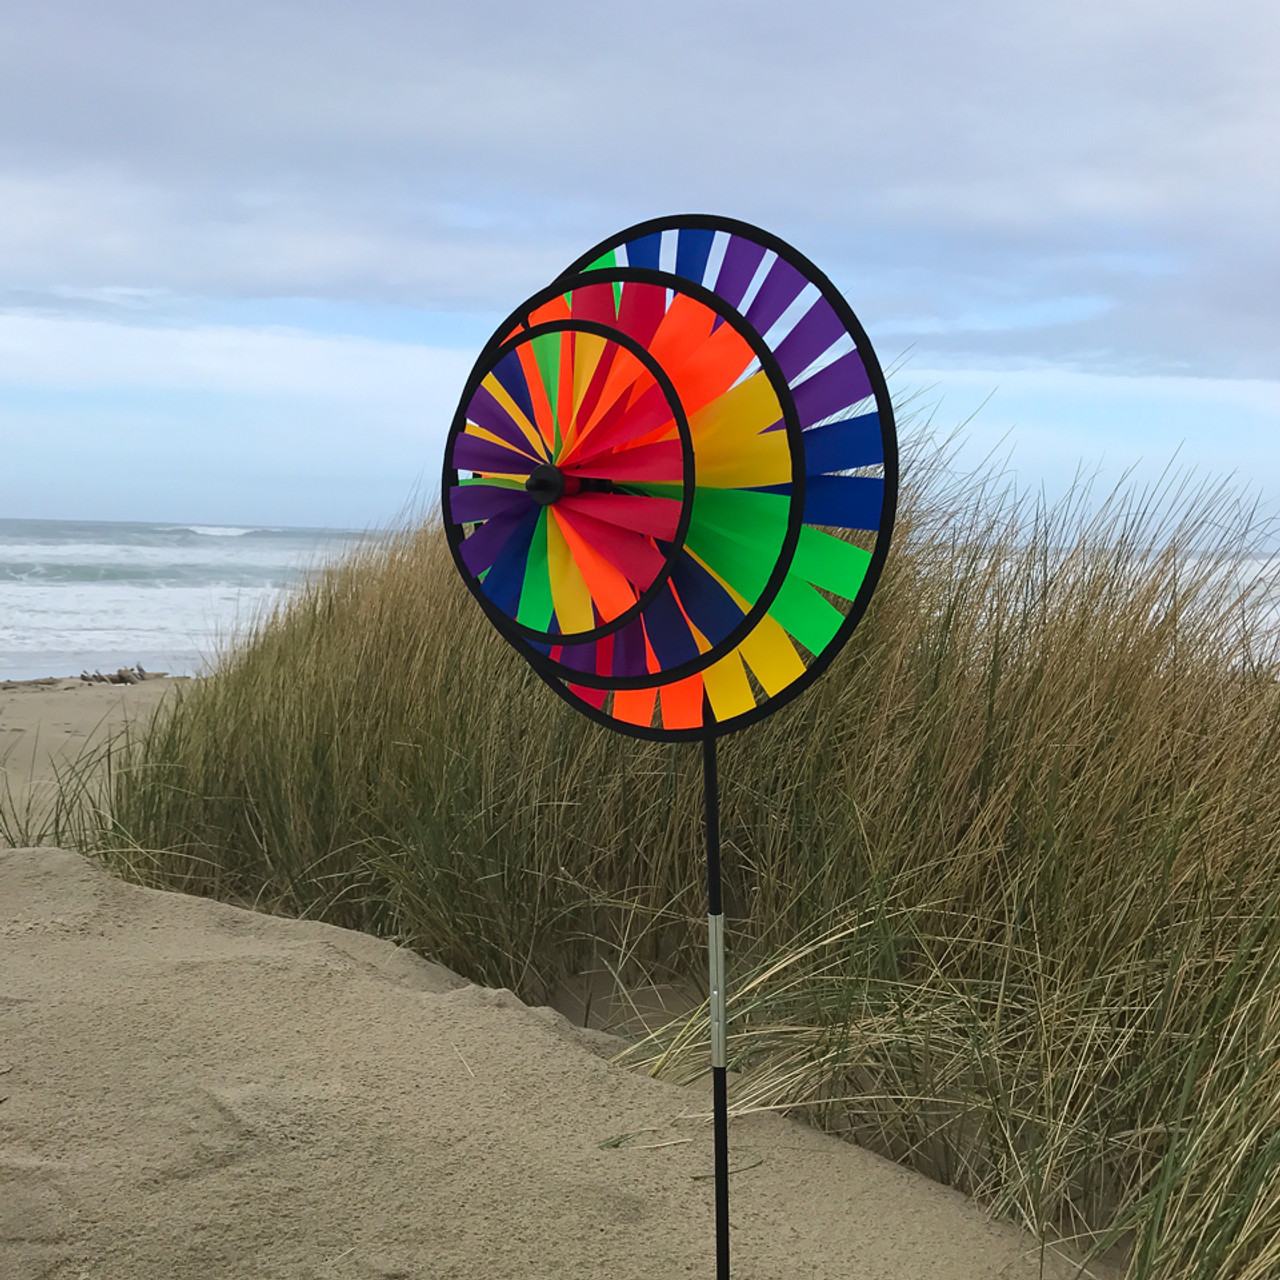 Rainbow Triple Wheel Spinner, In the Breeze